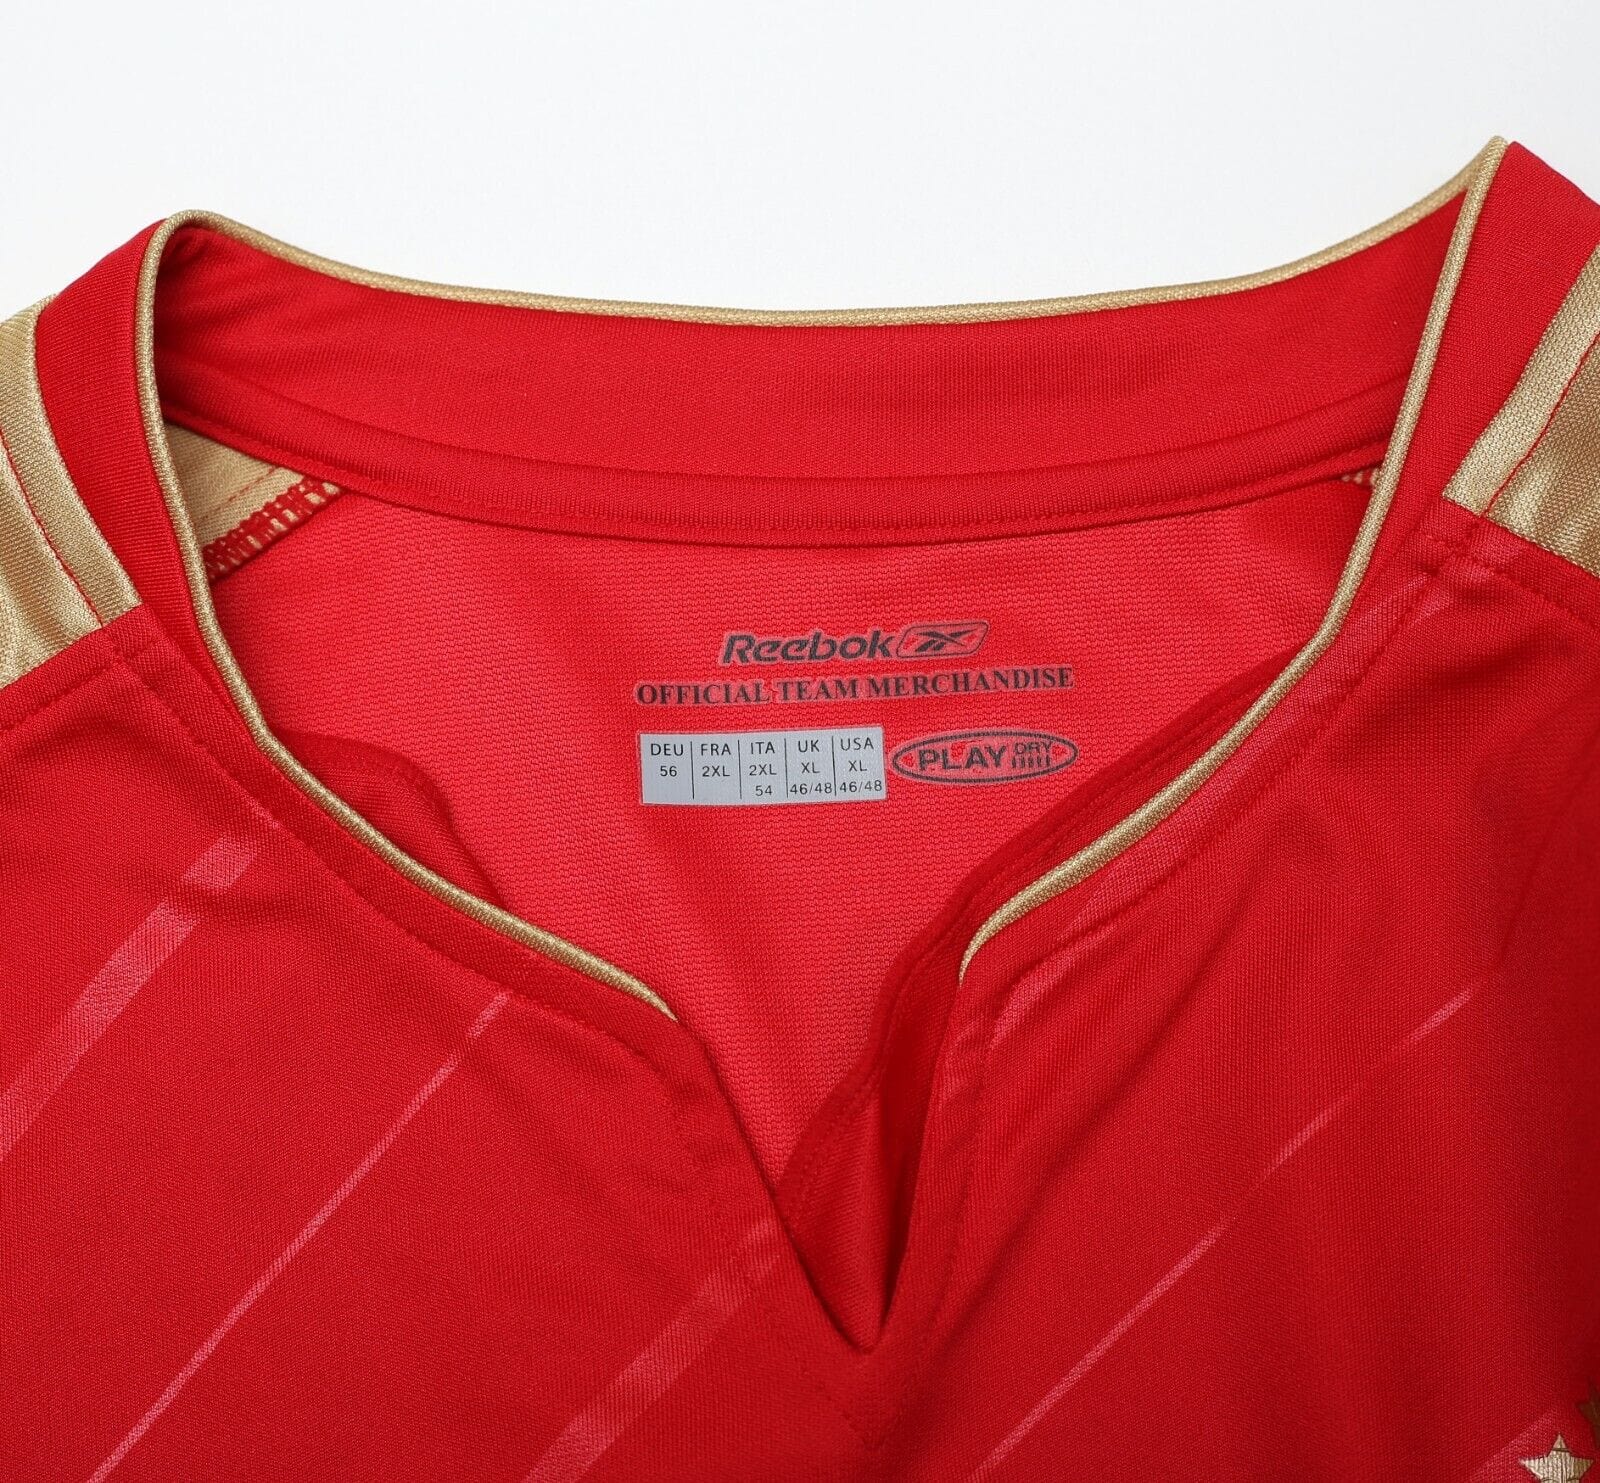 2005/06 GERRARD #8 Liverpool Vintage Reebok UCL Home Football Shirt Jersey (XL)